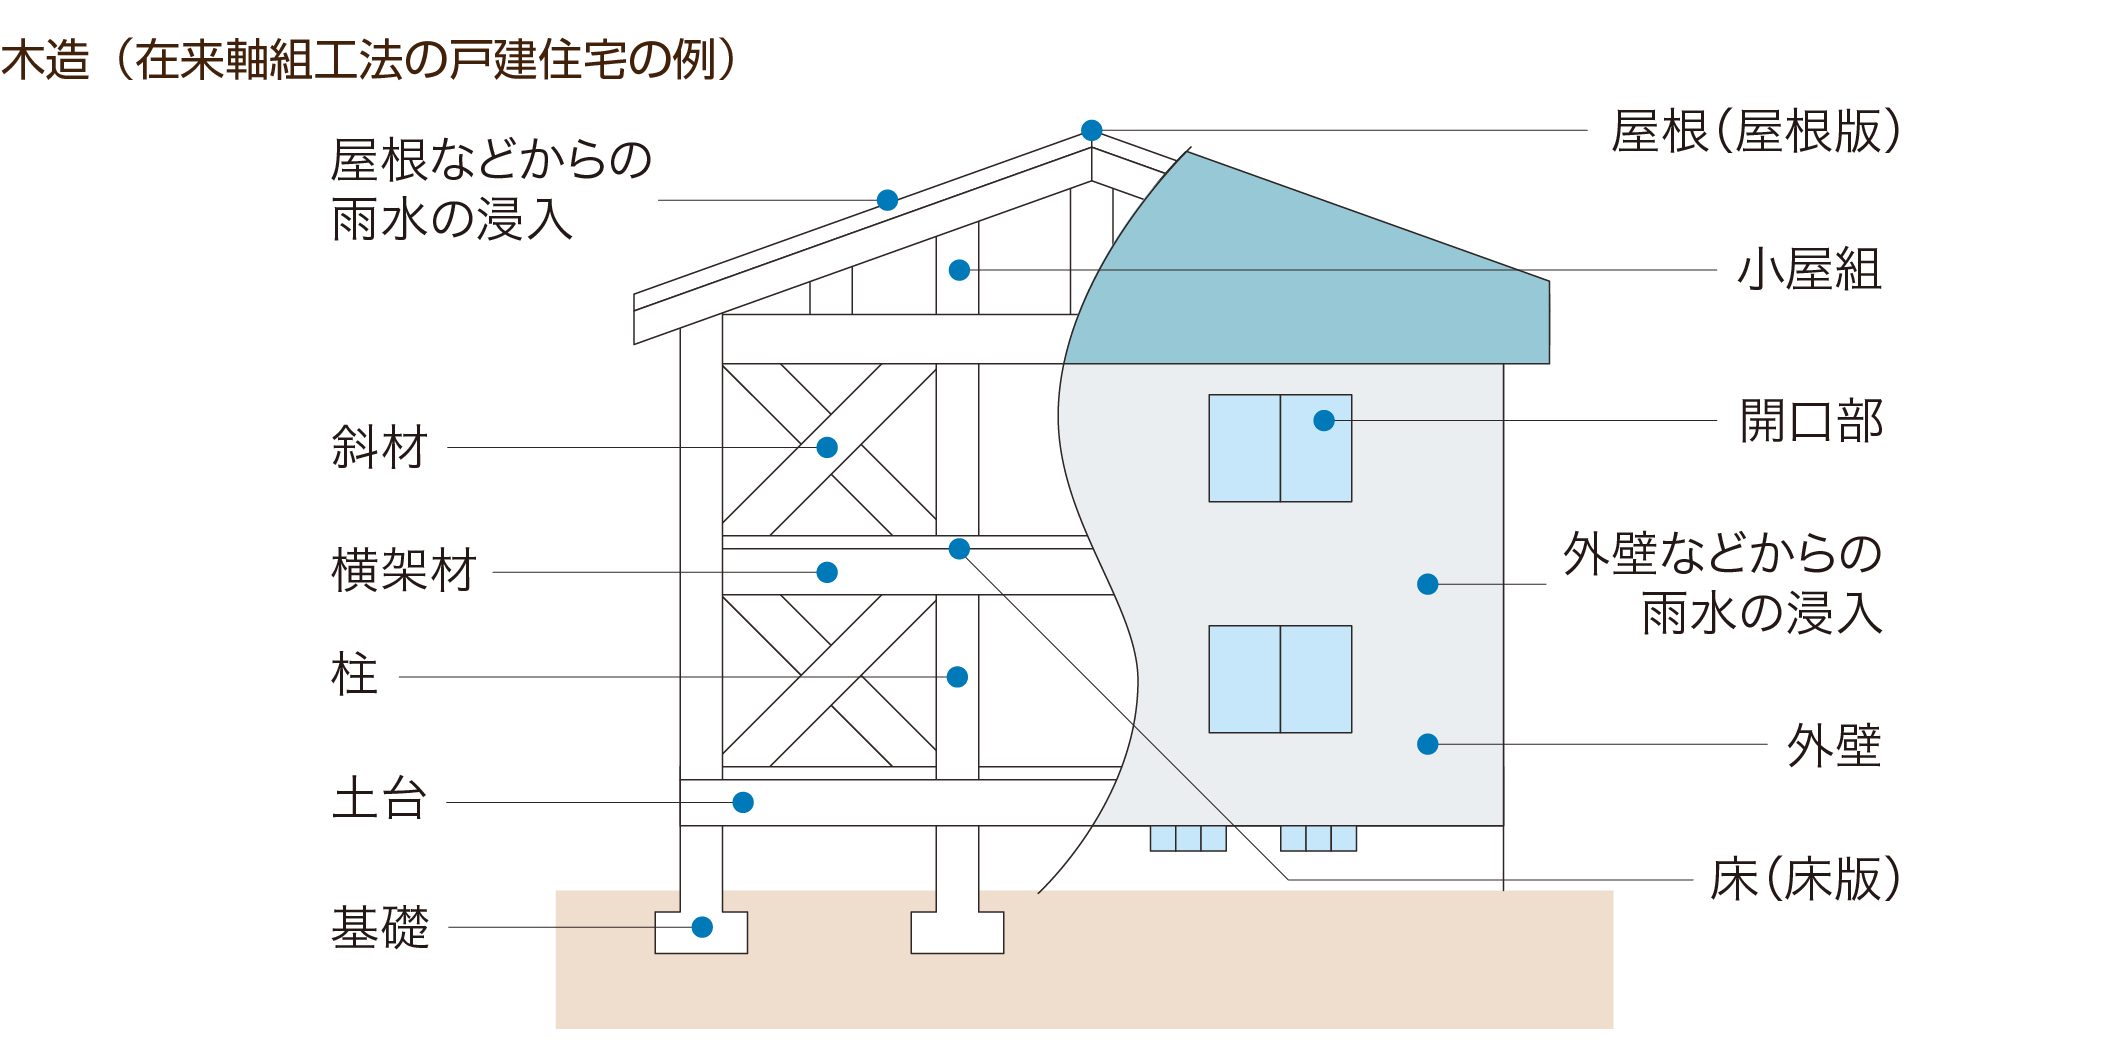 木造、在来軸き組工法の戸建住宅の例